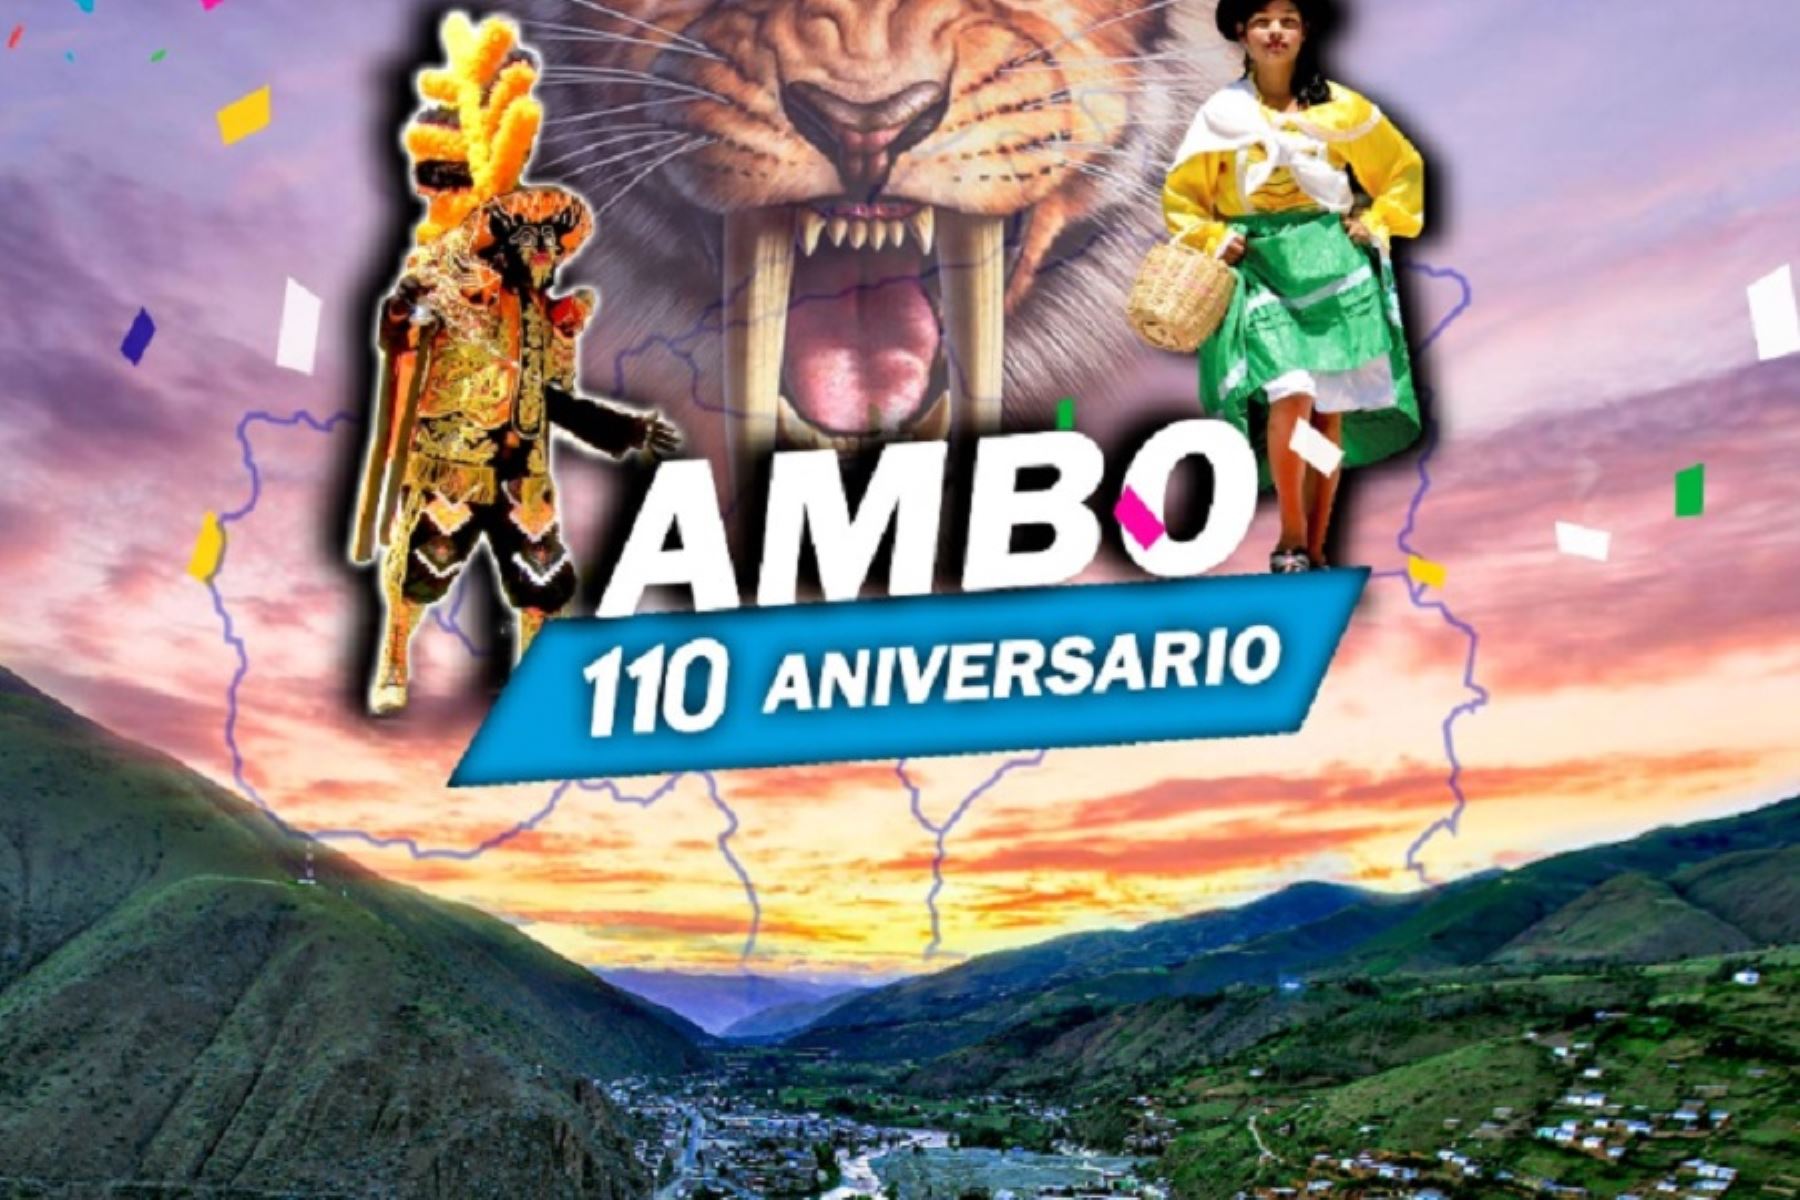 La provincia de Ambo celebra su 110 aniversario de creación política.